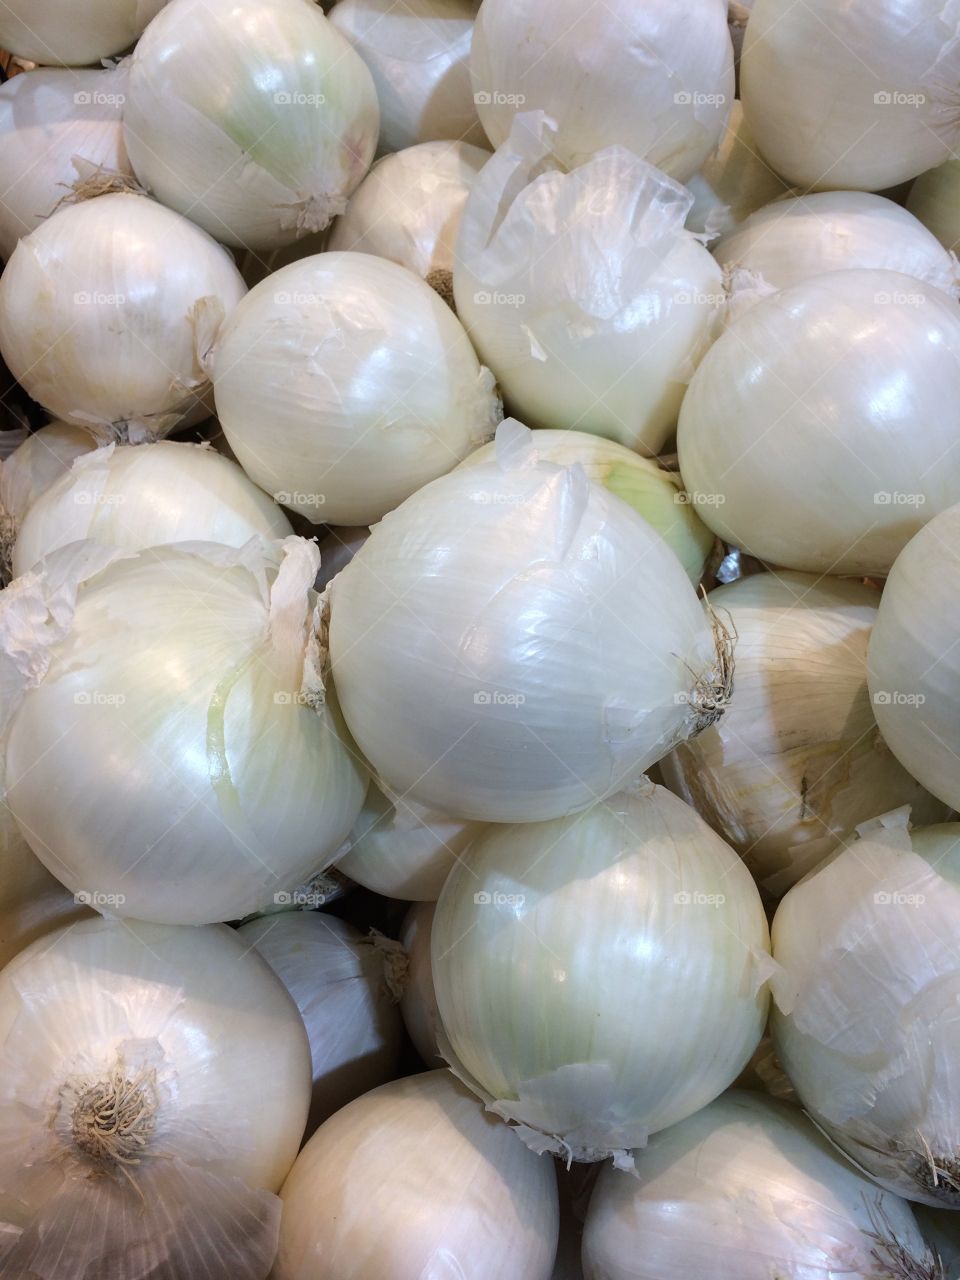 White onions 